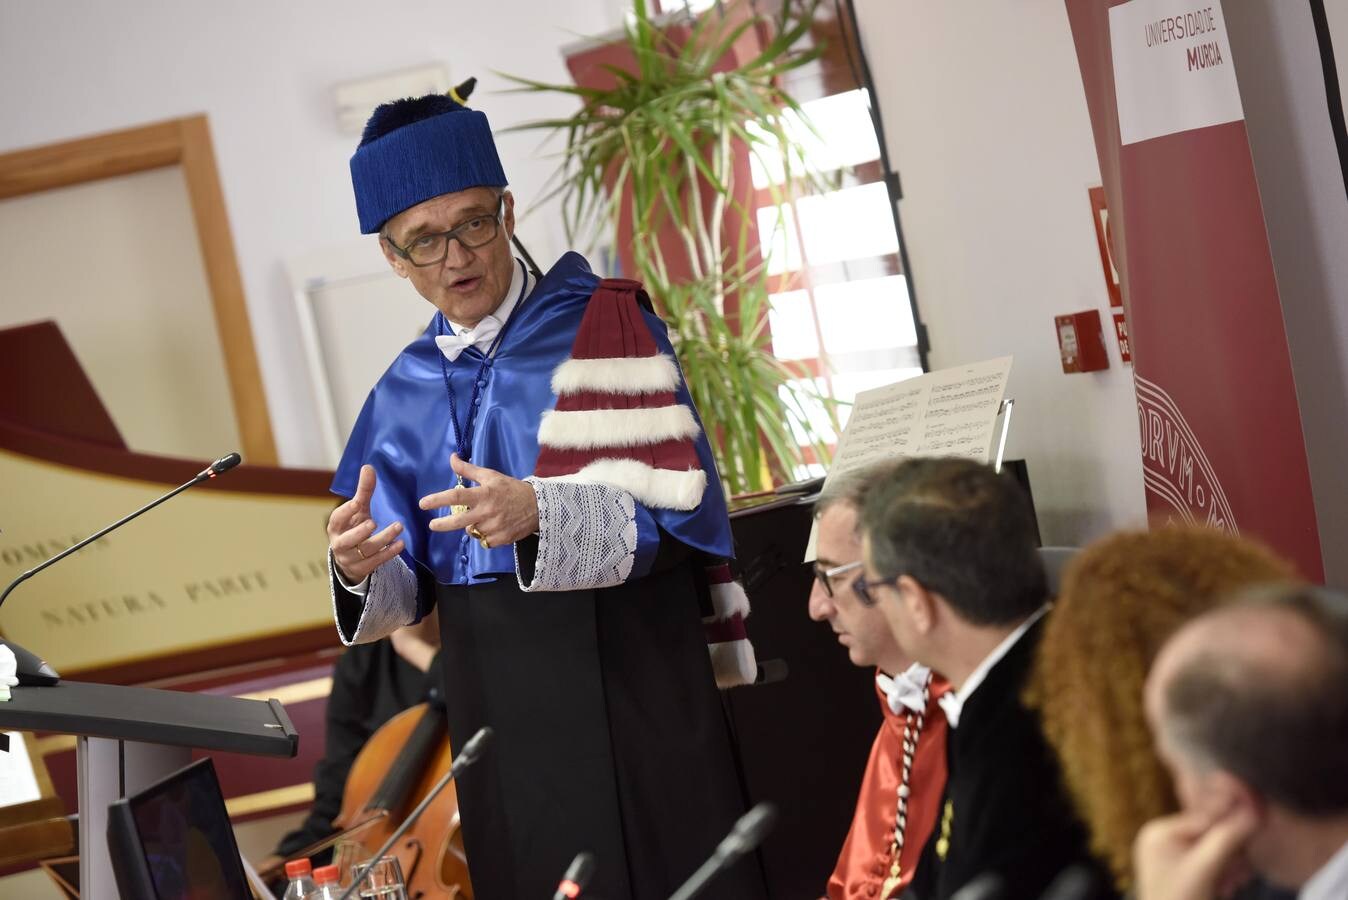 El rector de la UMU ha presidido el acto de investidura como Doctor Honoris Causa de Walter Schachermayer